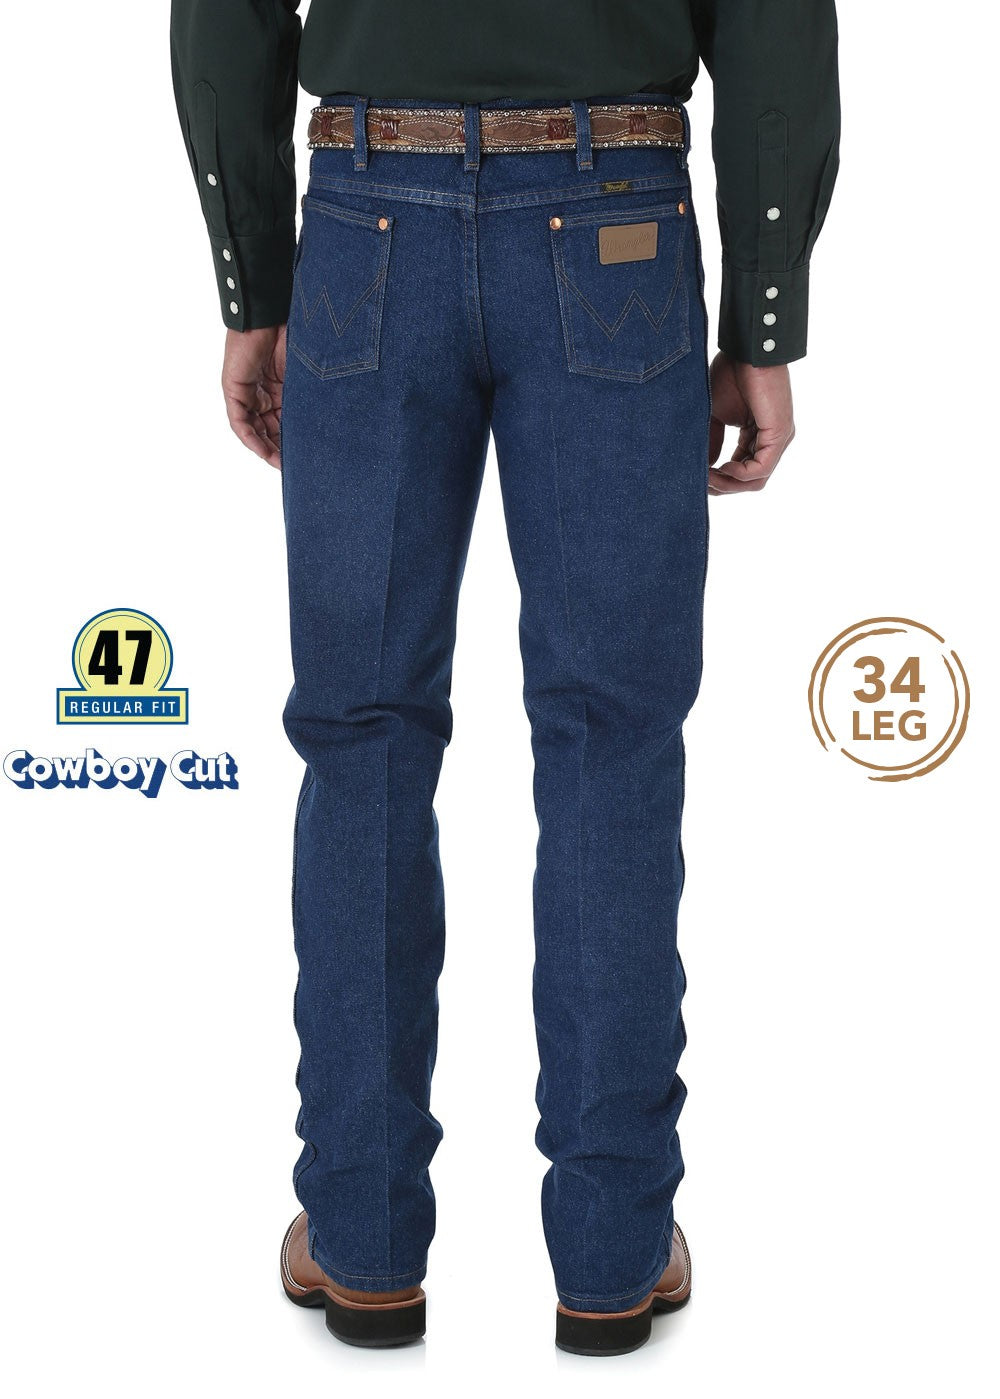 Wrangler Cowboy Cut Slim Fit Men's Jeans